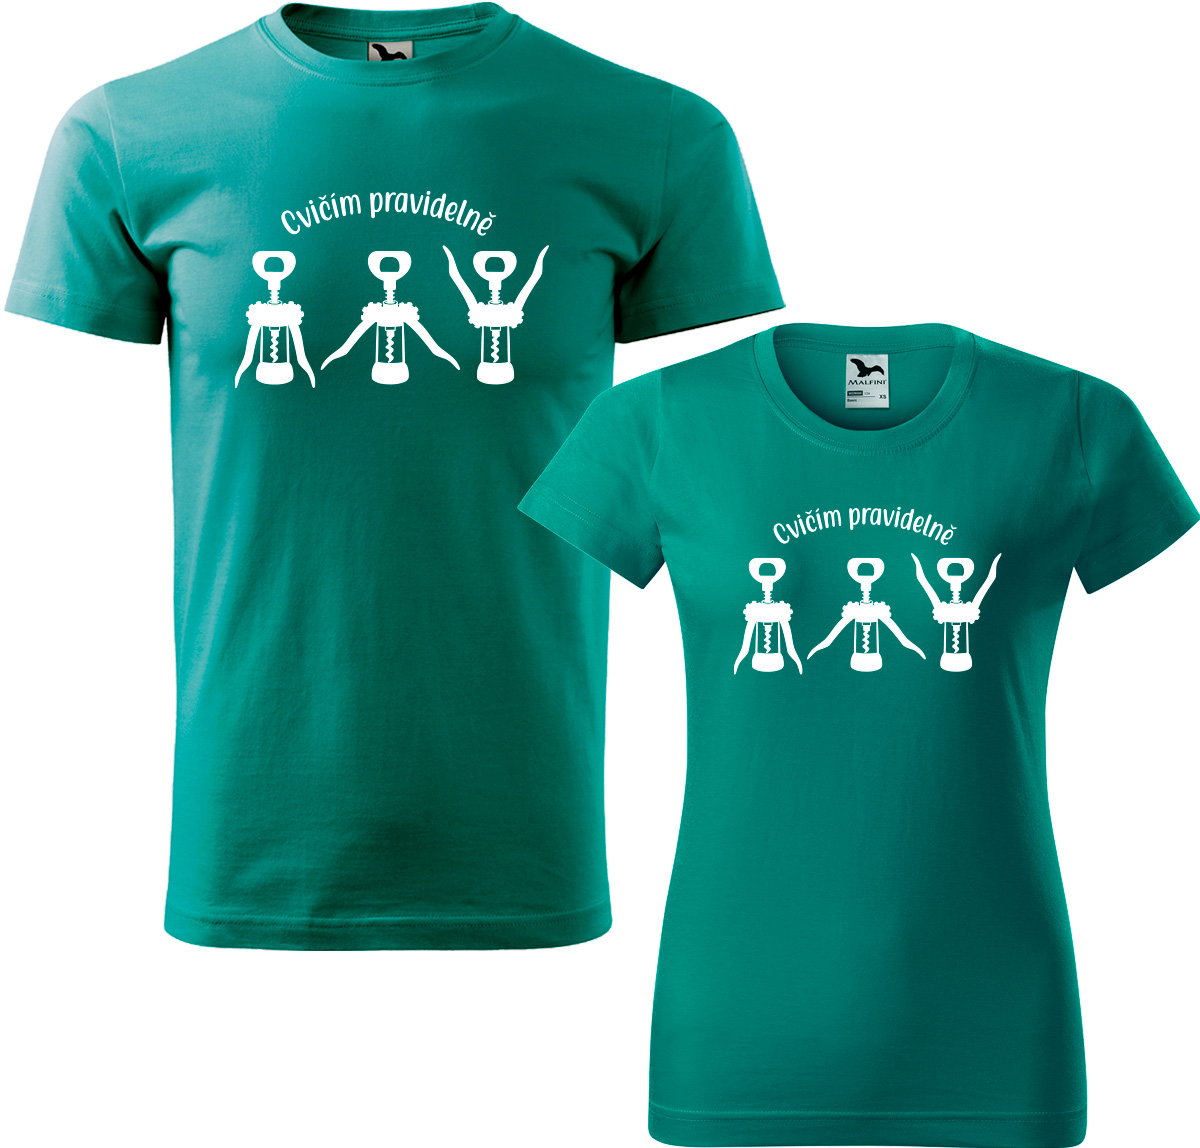 Trička pro páry - Cvičím pravidelně Barva: Emerald (19), Velikost dámské tričko: 3XL, Velikost pánské tričko: 3XL